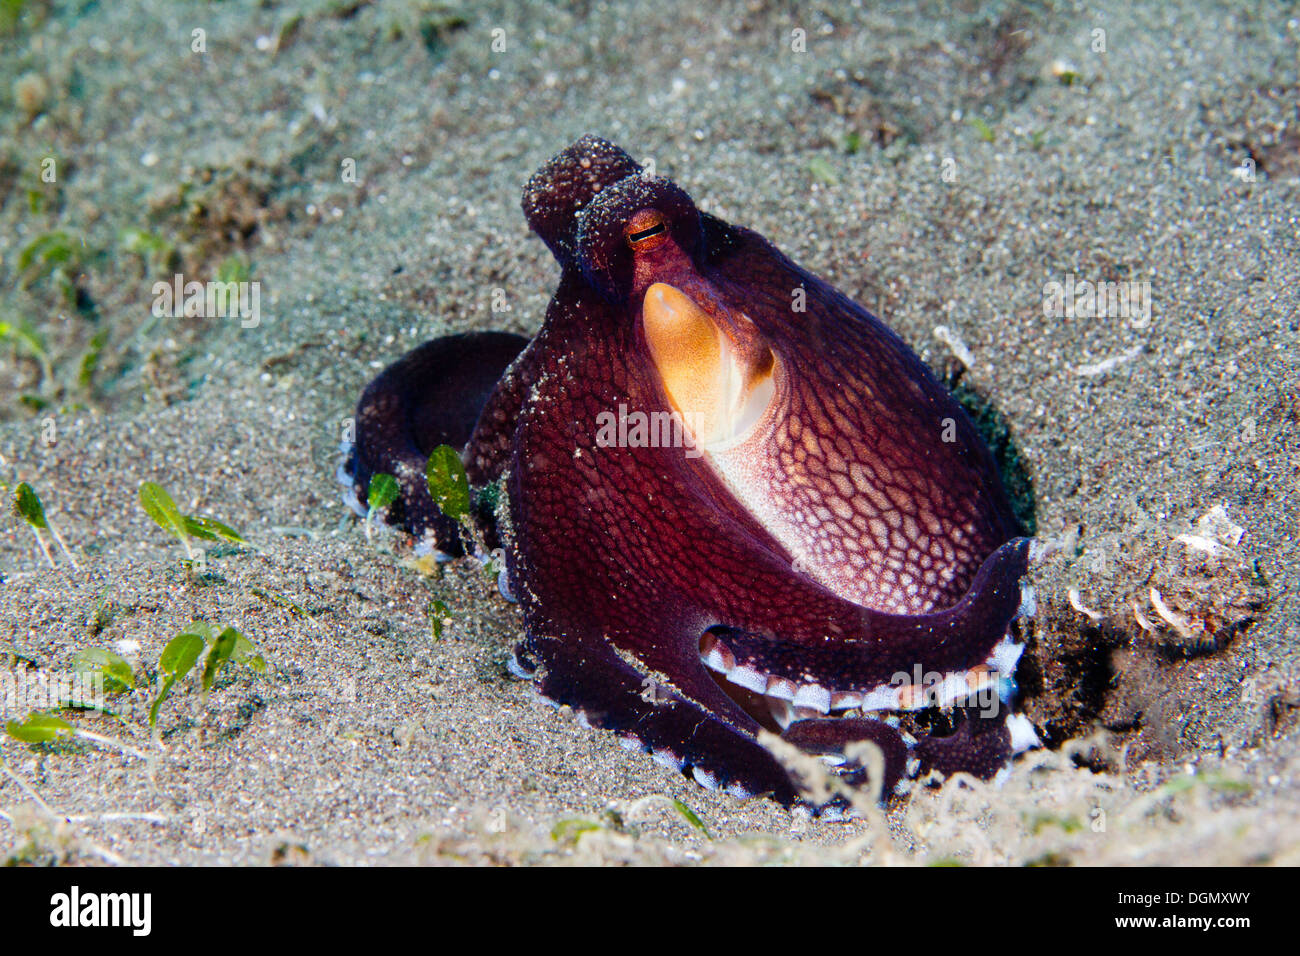 Coconut octopus - Amphioctopus marginatus, Lembeh Strait, Indonesia Stock Photo